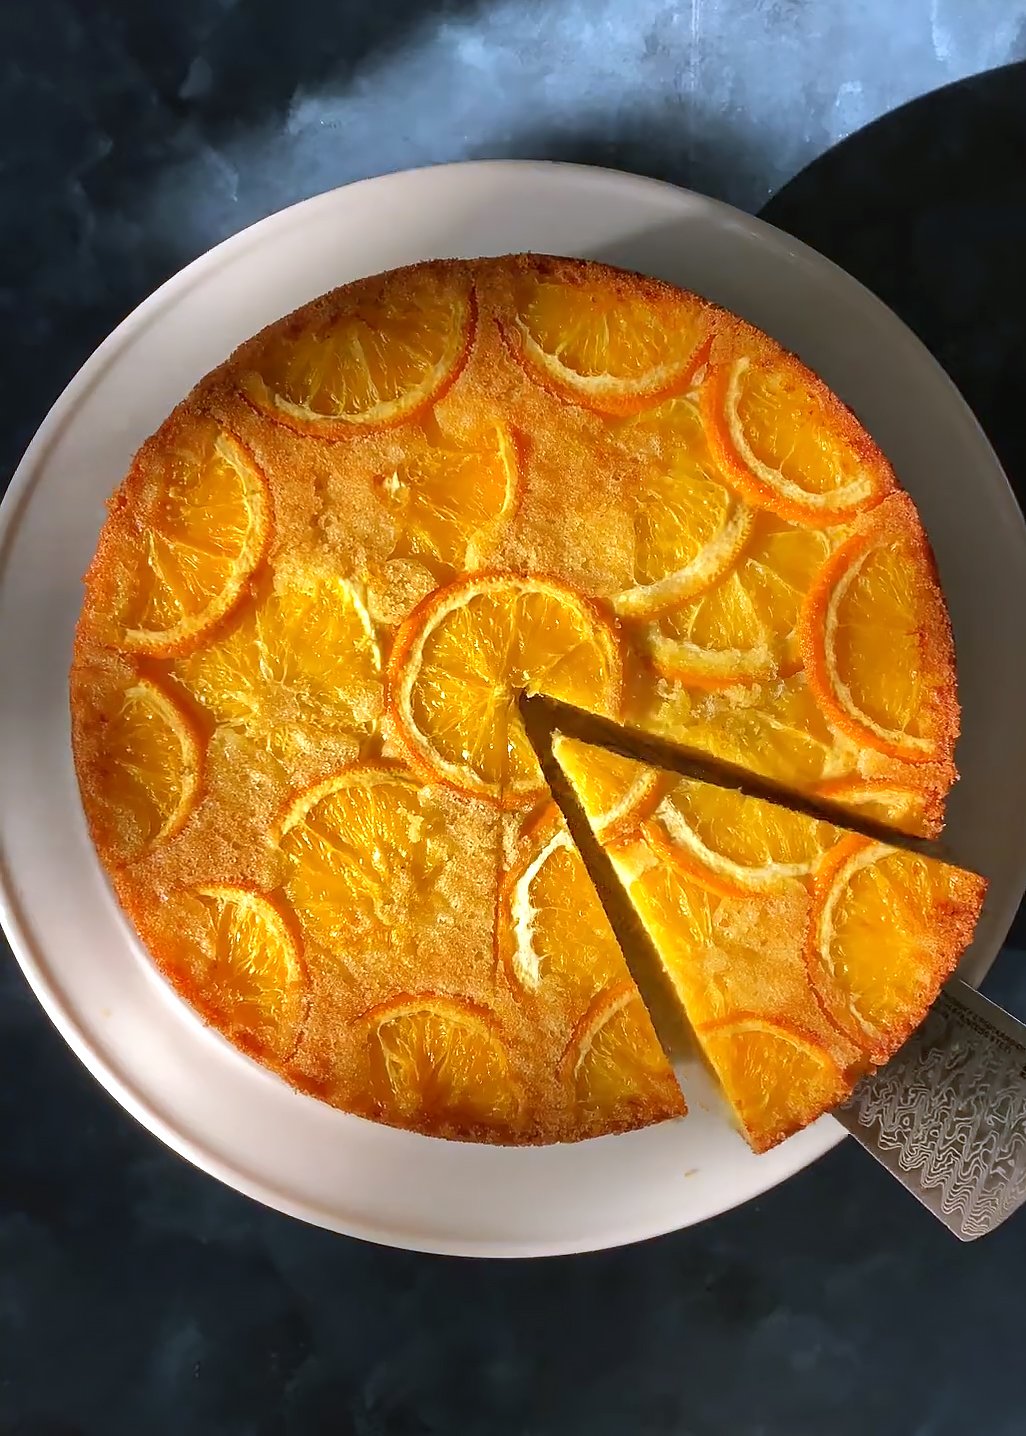 orange olive oil cake, sliced